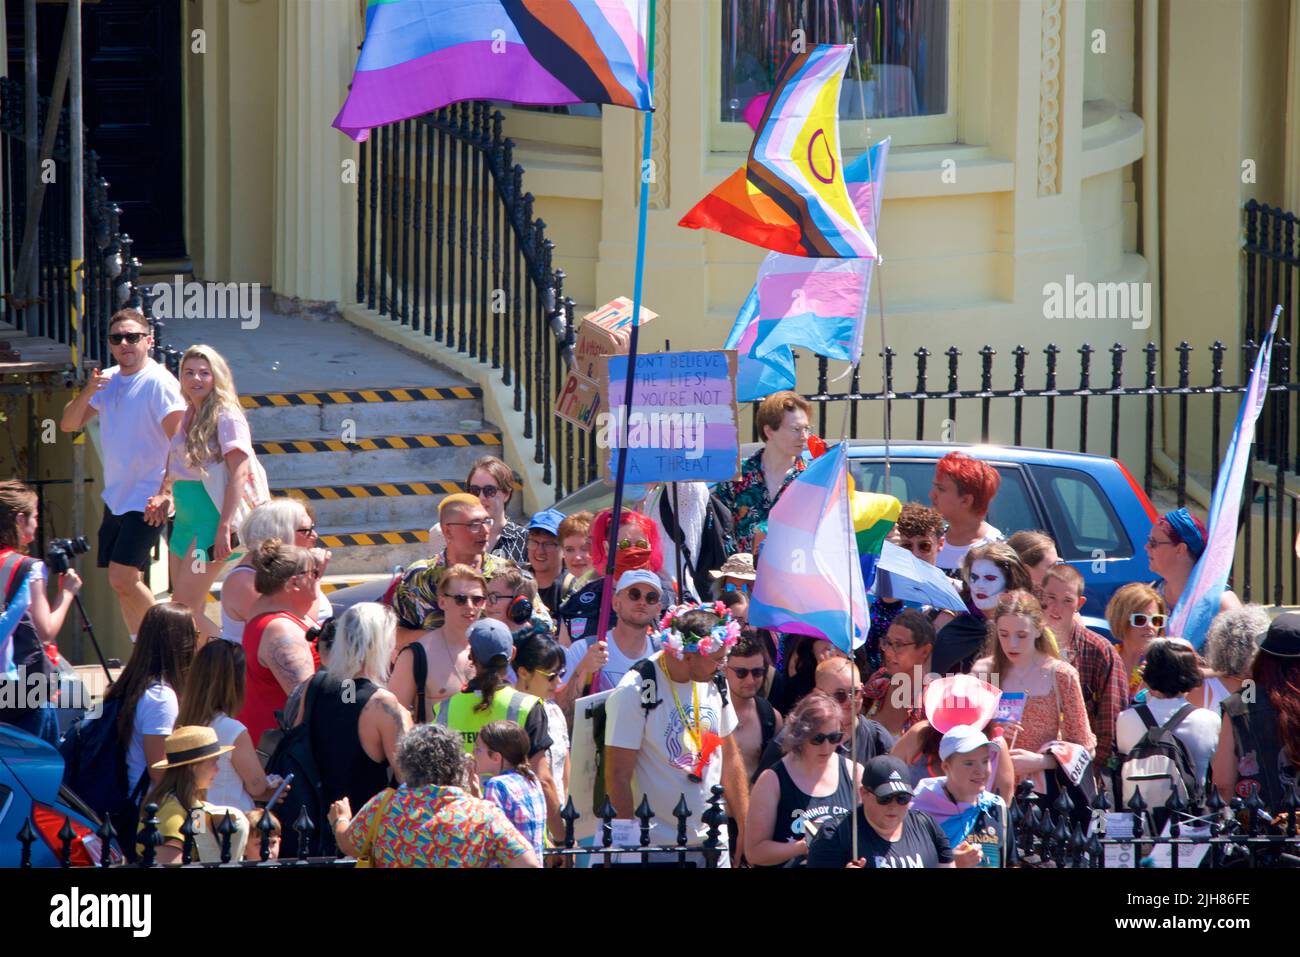 Festival de Procesión del Orgullo Trans, Brighton & Hove. 16 de julio de 2022. La gente se reúne para la culminación del Rally y Festival Trans Pride anual en Brunswick Square, Brighton & Hove, Inglaterra. Crédito: J. Marshall / Alamy Live News Foto de stock